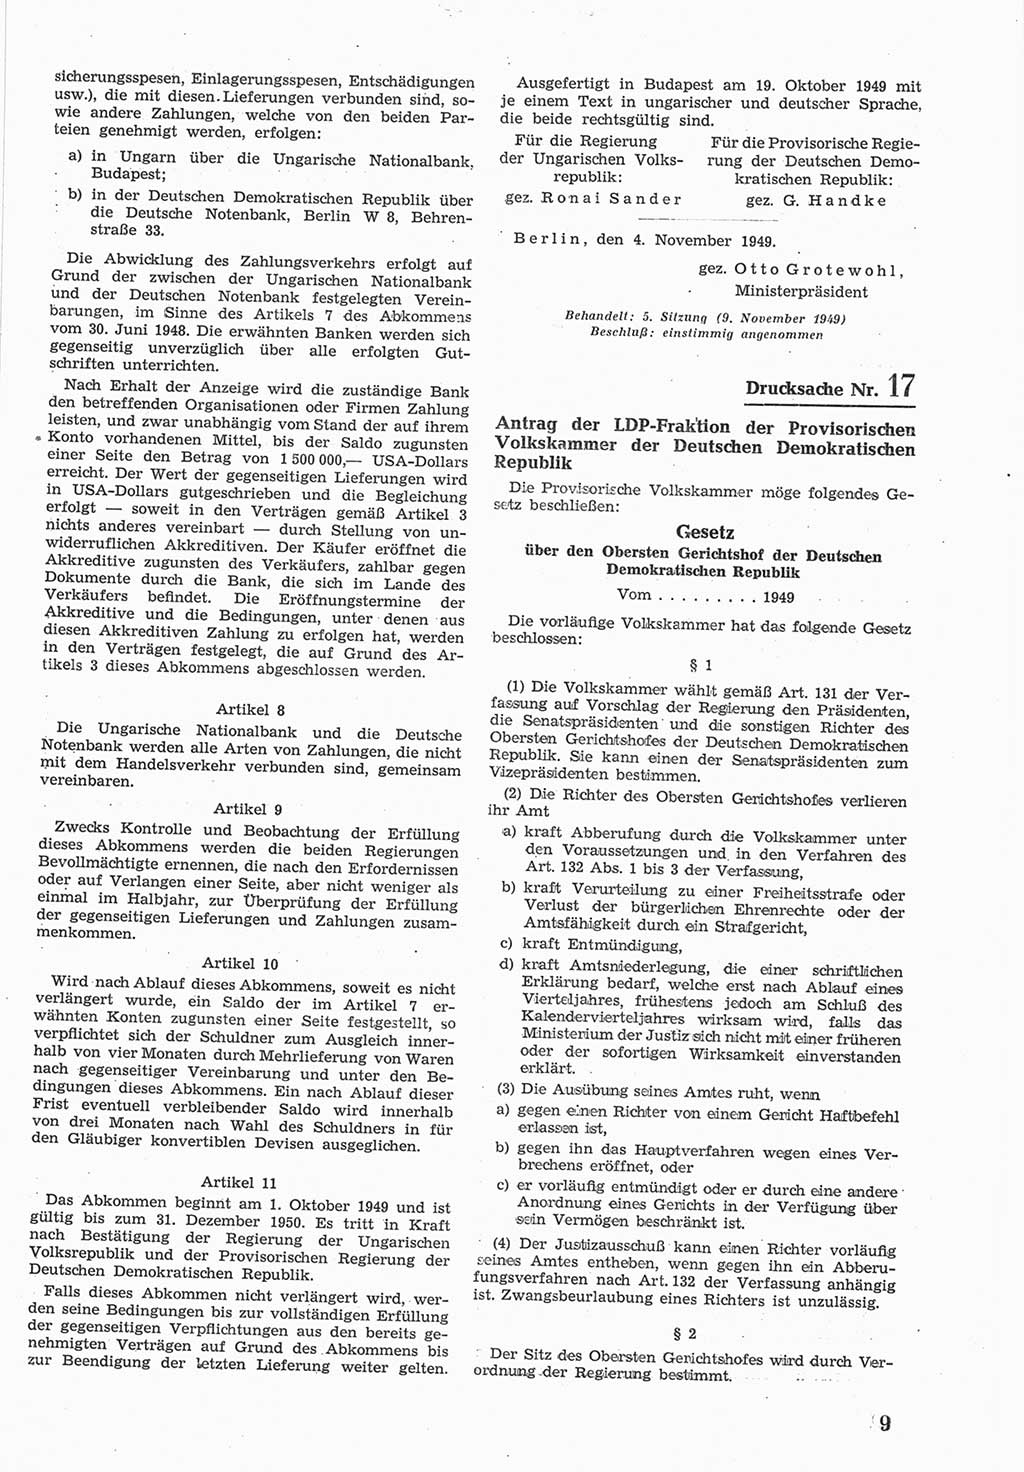 Provisorische Volkskammer (VK) der Deutschen Demokratischen Republik (DDR) 1949-1950, Dokument 577 (Prov. VK DDR 1949-1950, Dok. 577)